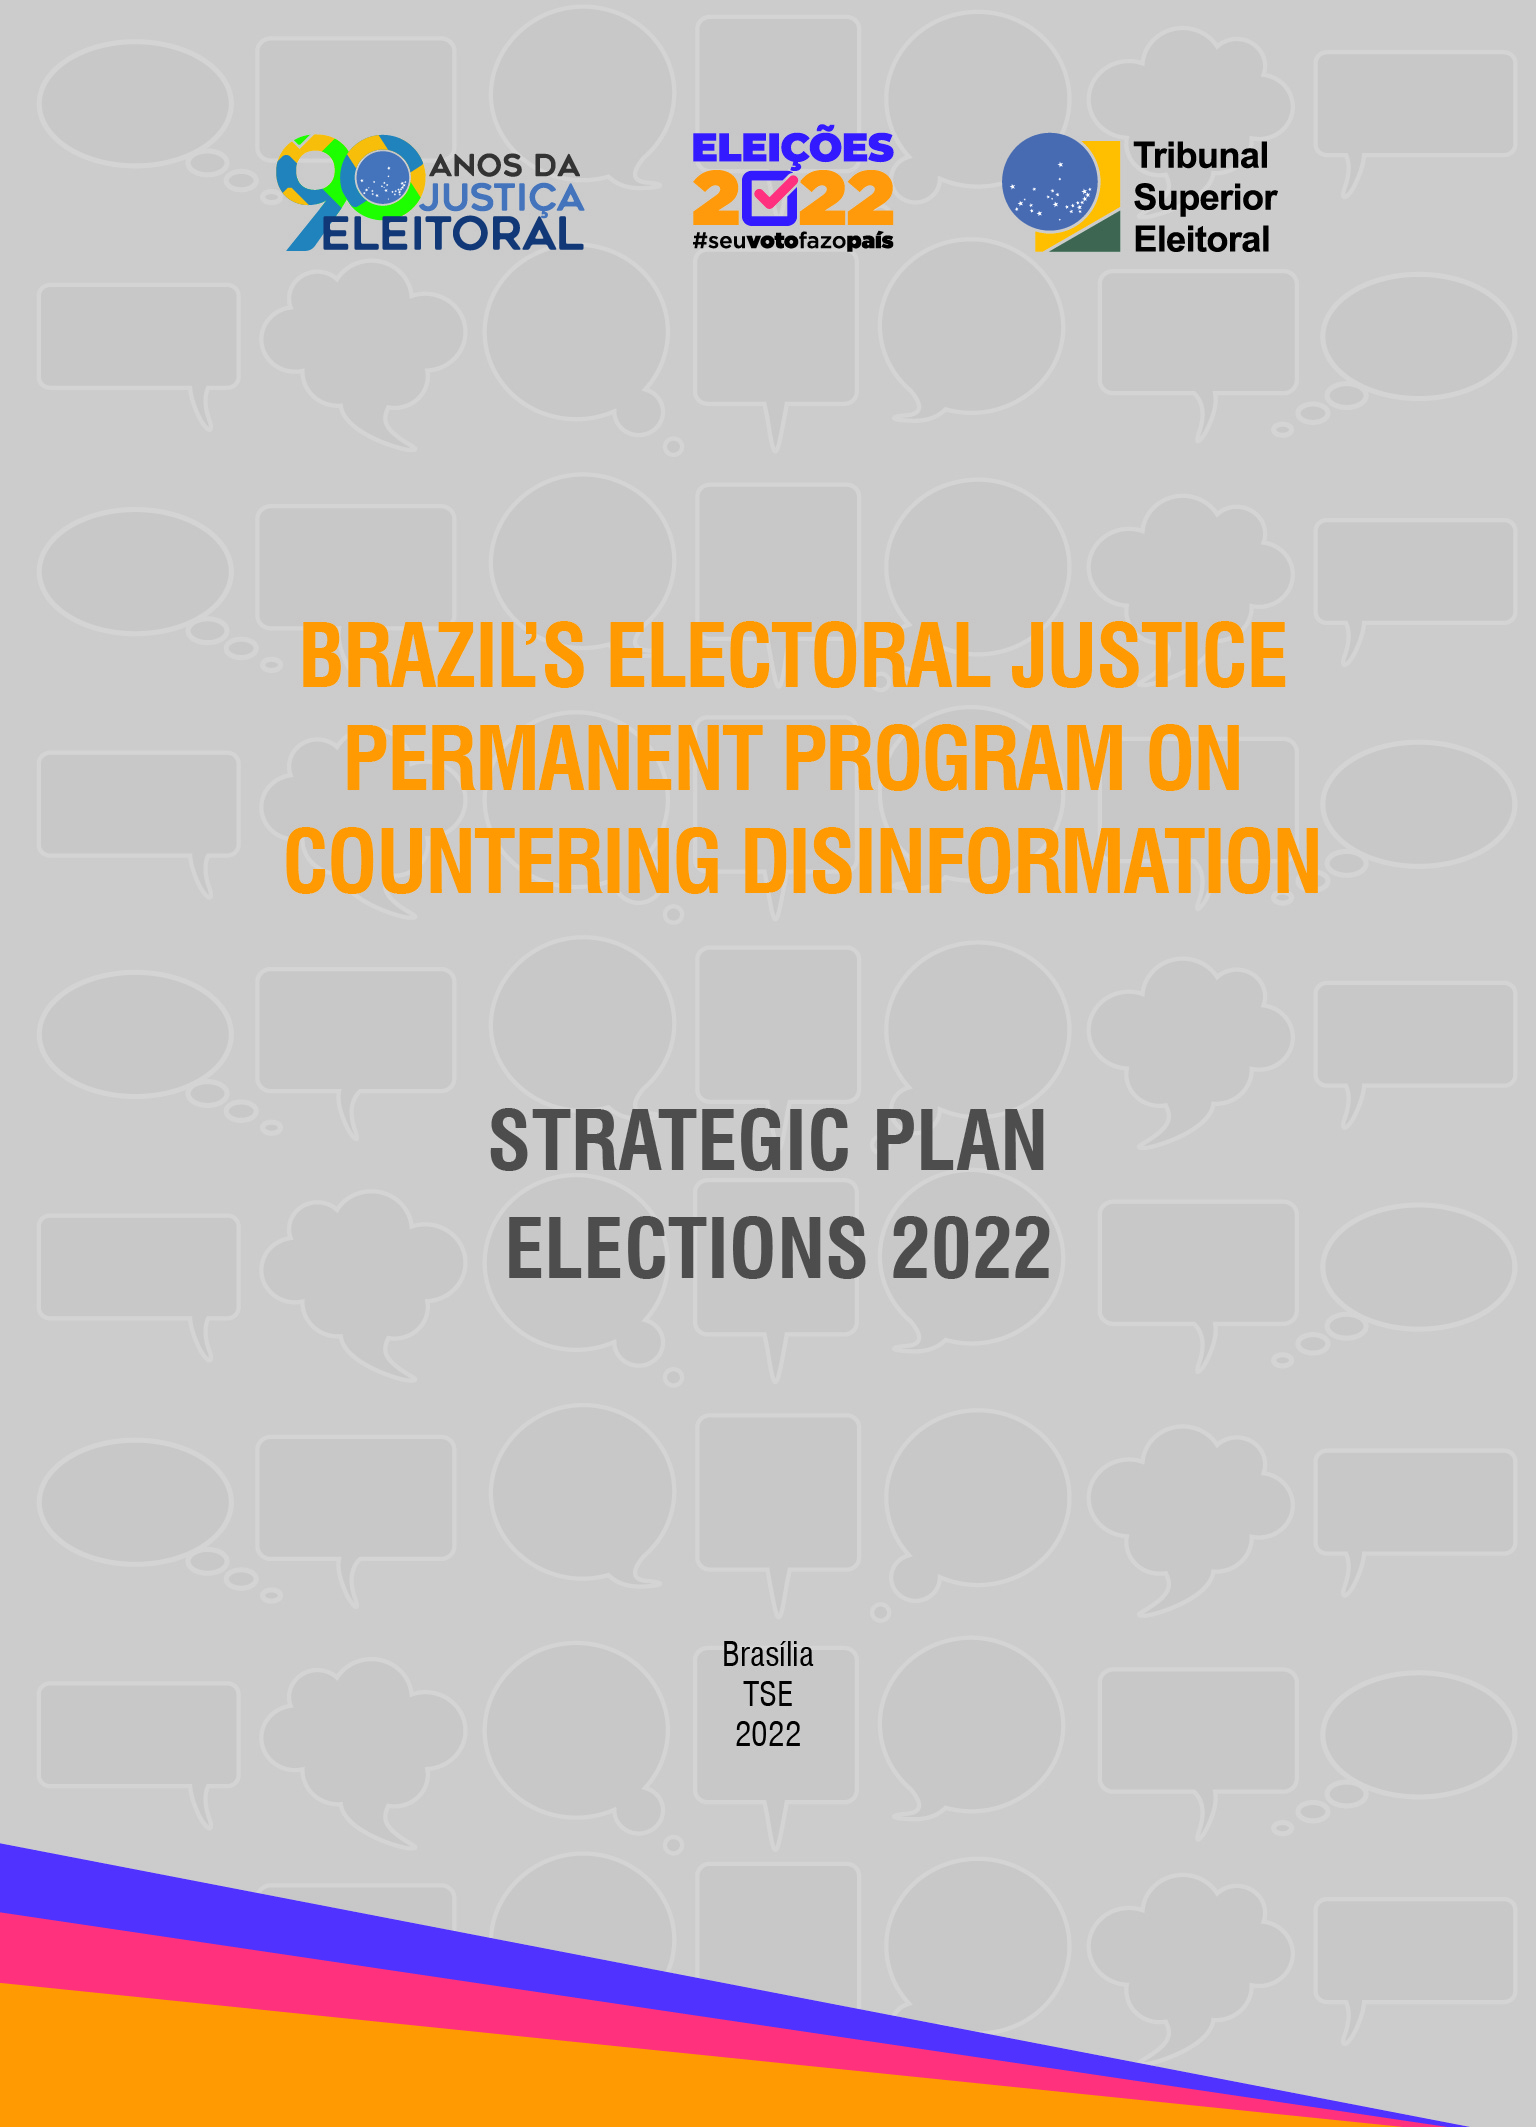 Programa permanente de enfrentamento à desinformação no âmbito da Justiça Eleitoral - Plano Estratégico - Eleições 2022